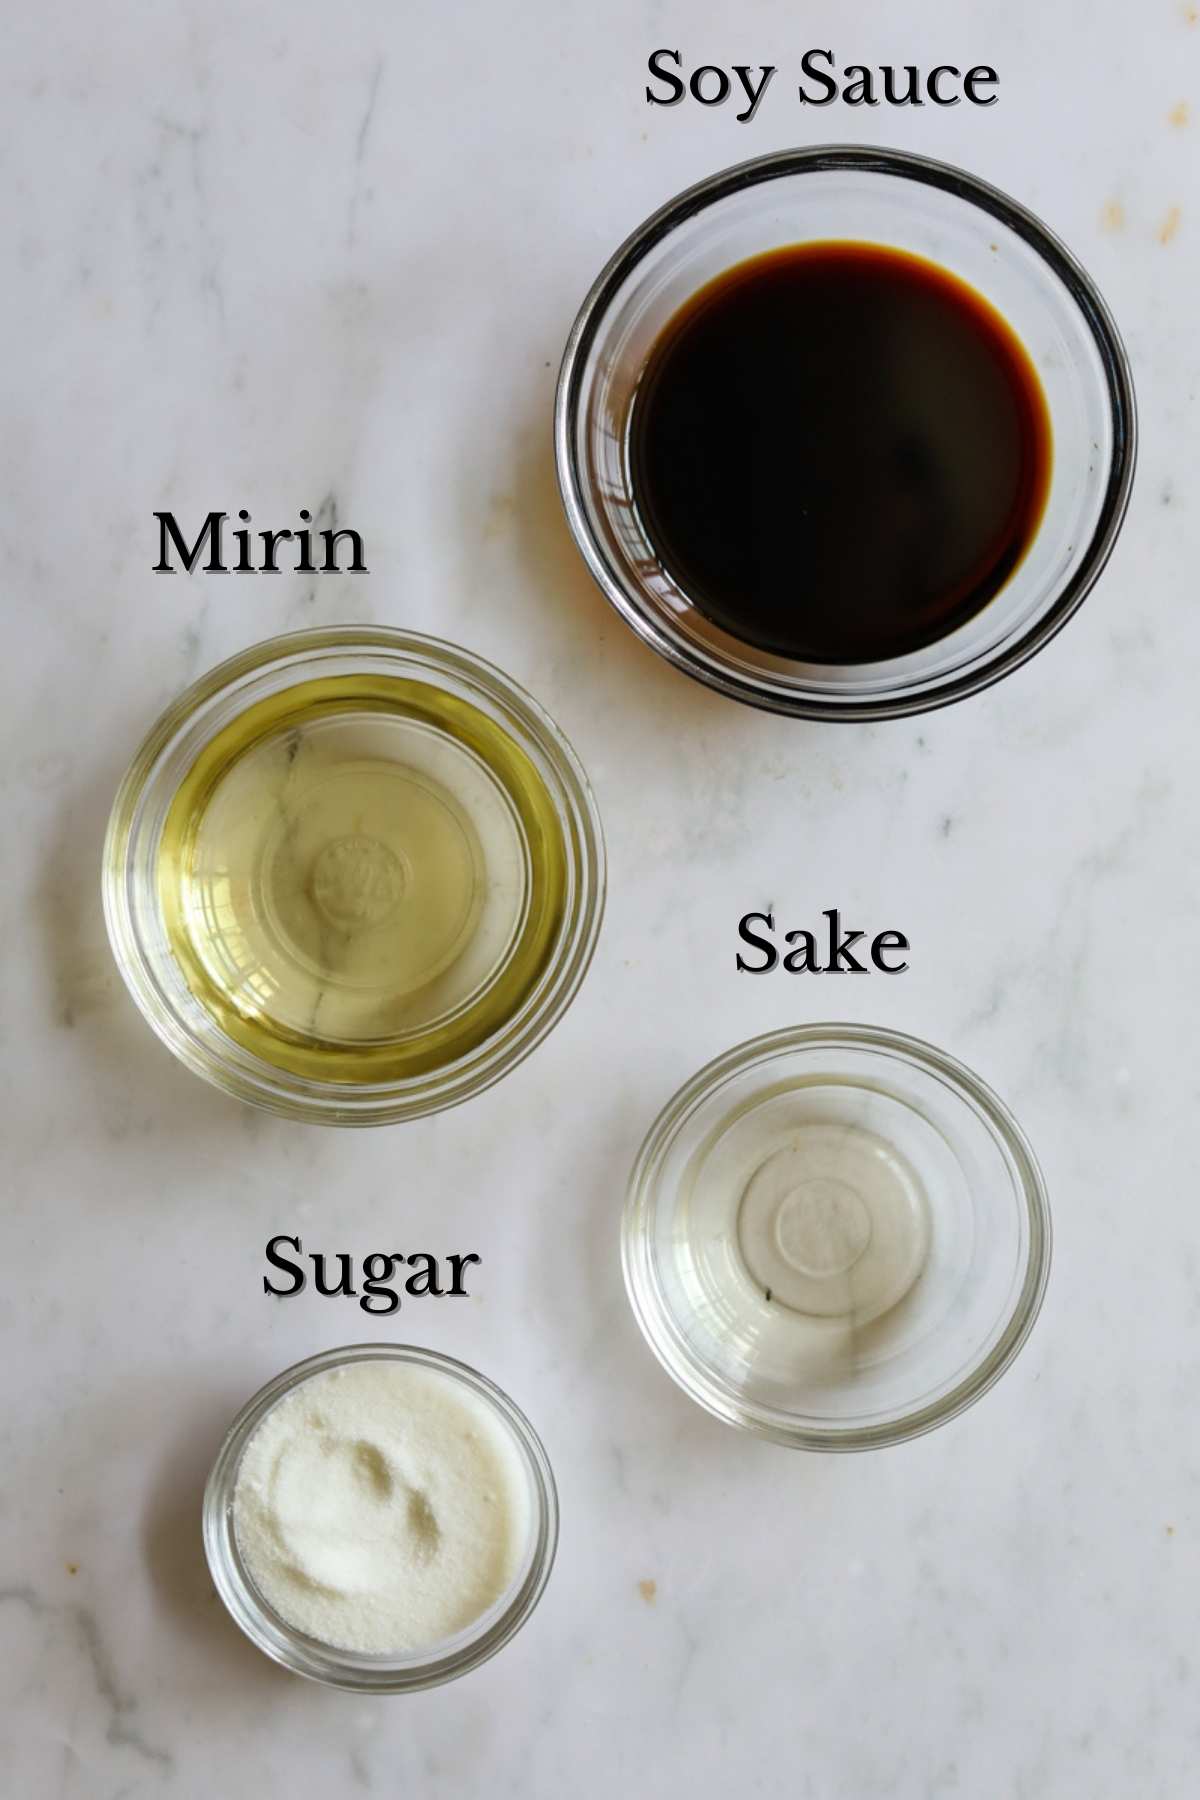 Ingredients to make unagi sauce (mirin, sugar, sake, soy sauce).